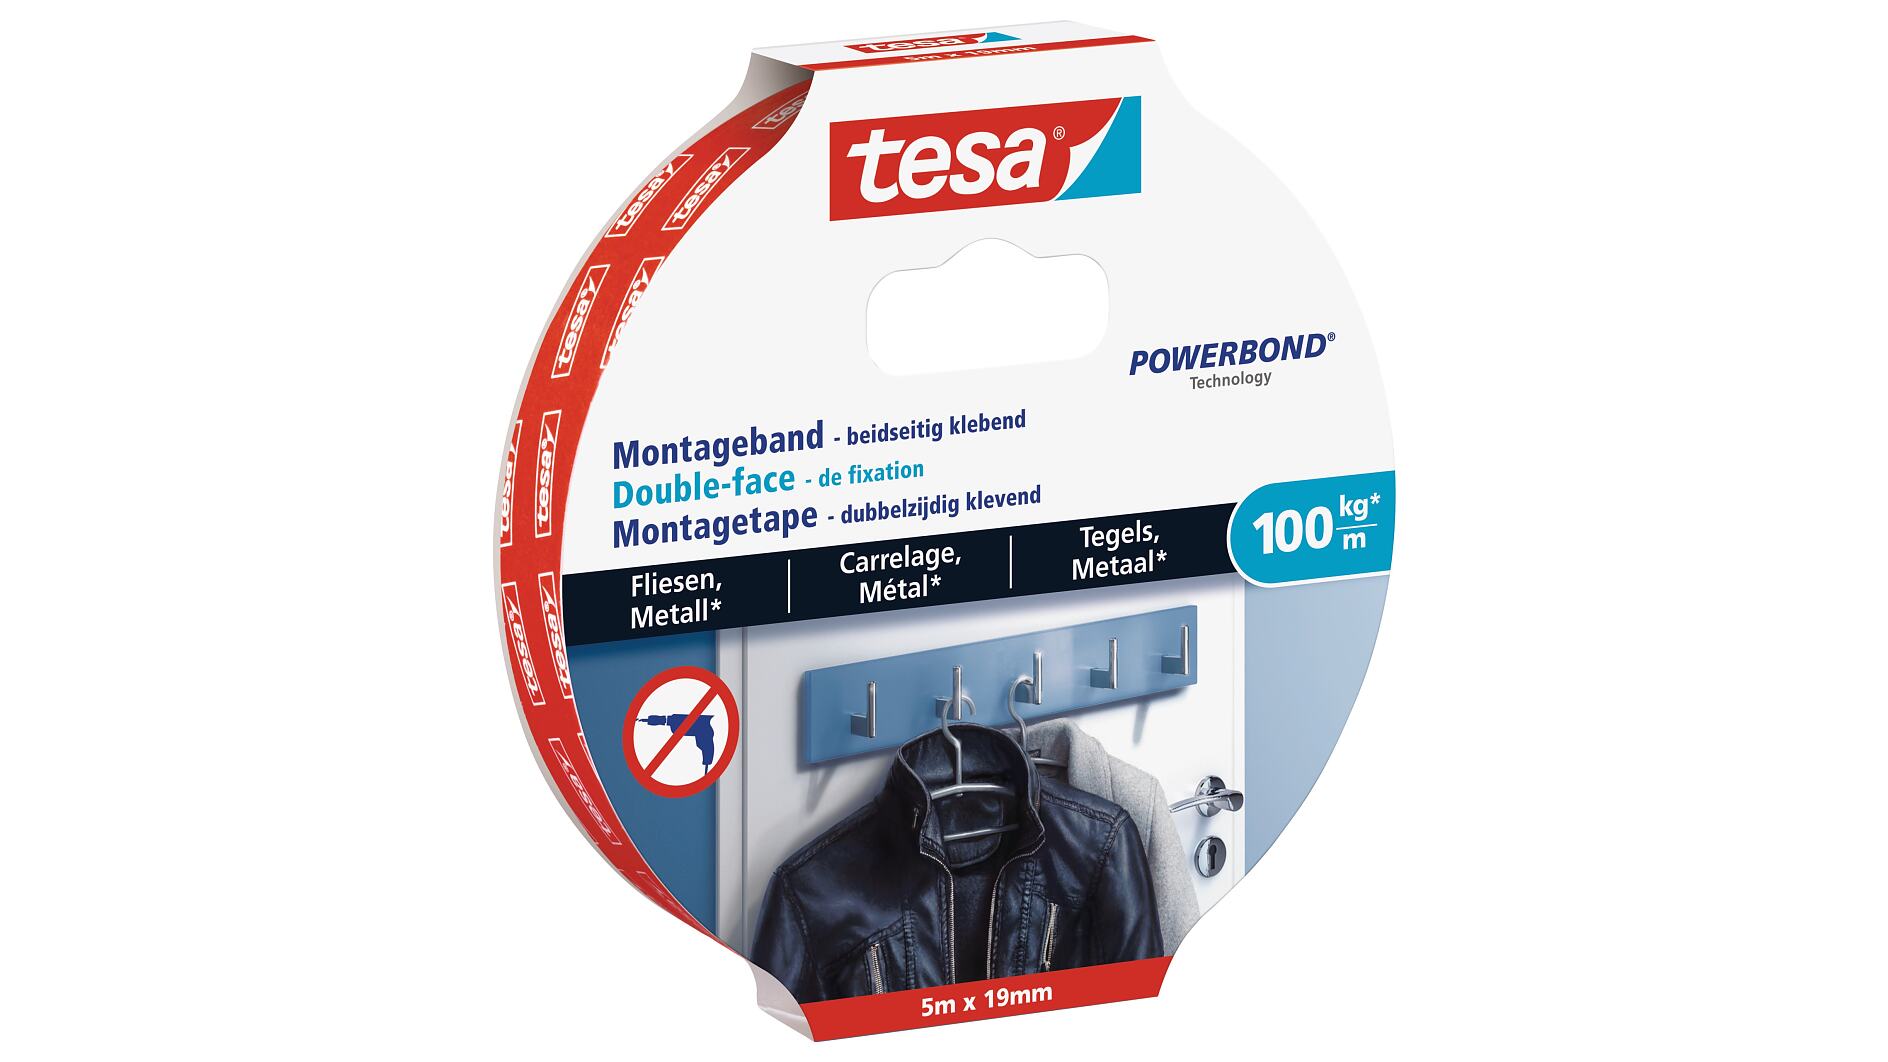 tesa® Ultra starkes Montageband für Fliesen und Metall (100kg/m) - tesa